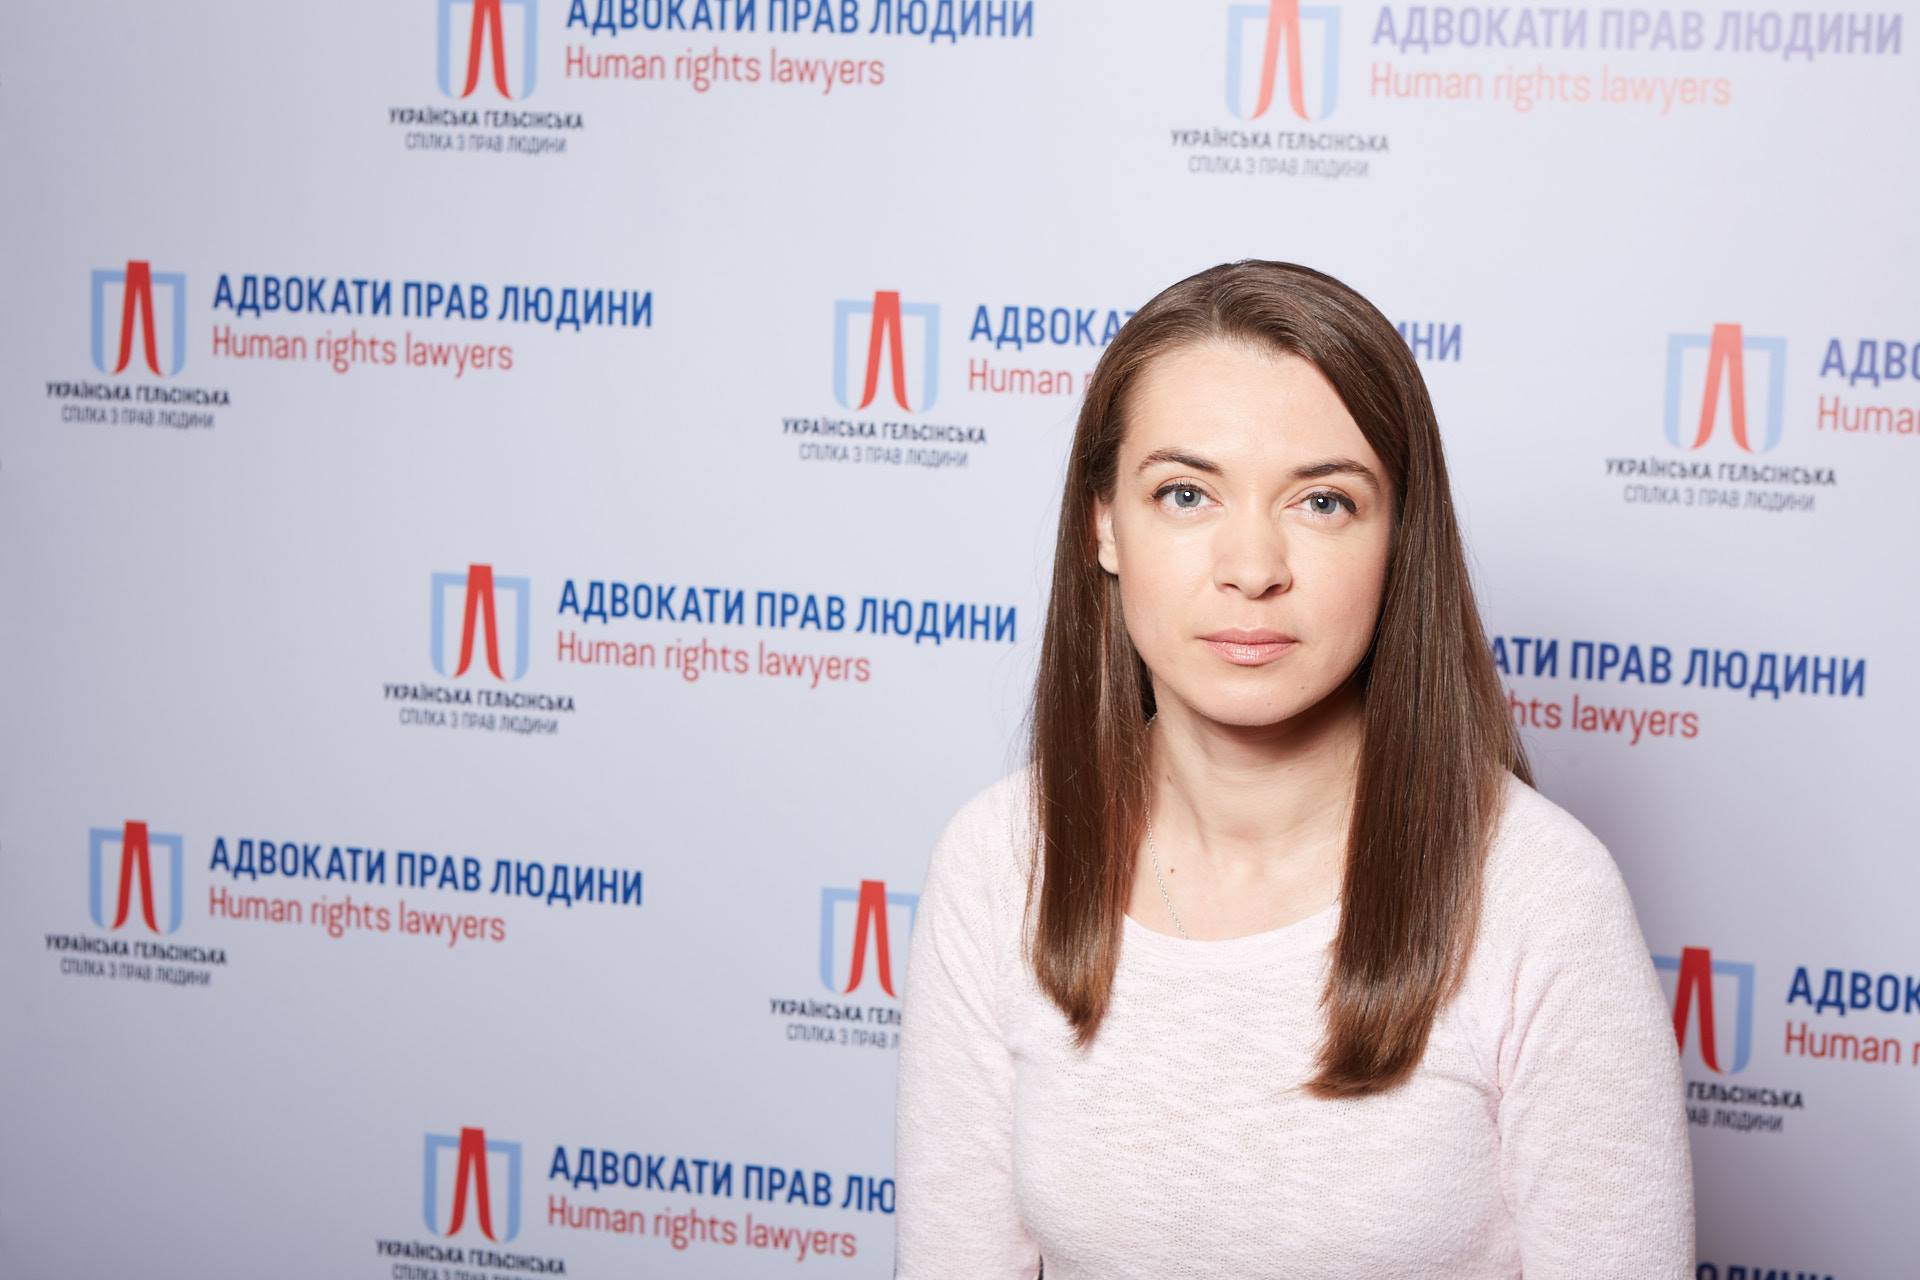 Дарья Свиридова, УХСПЧ: Только за 2017 год количество узников Кремля выросло на 18 человек. СМИ слабо освещают тему политзаключенных